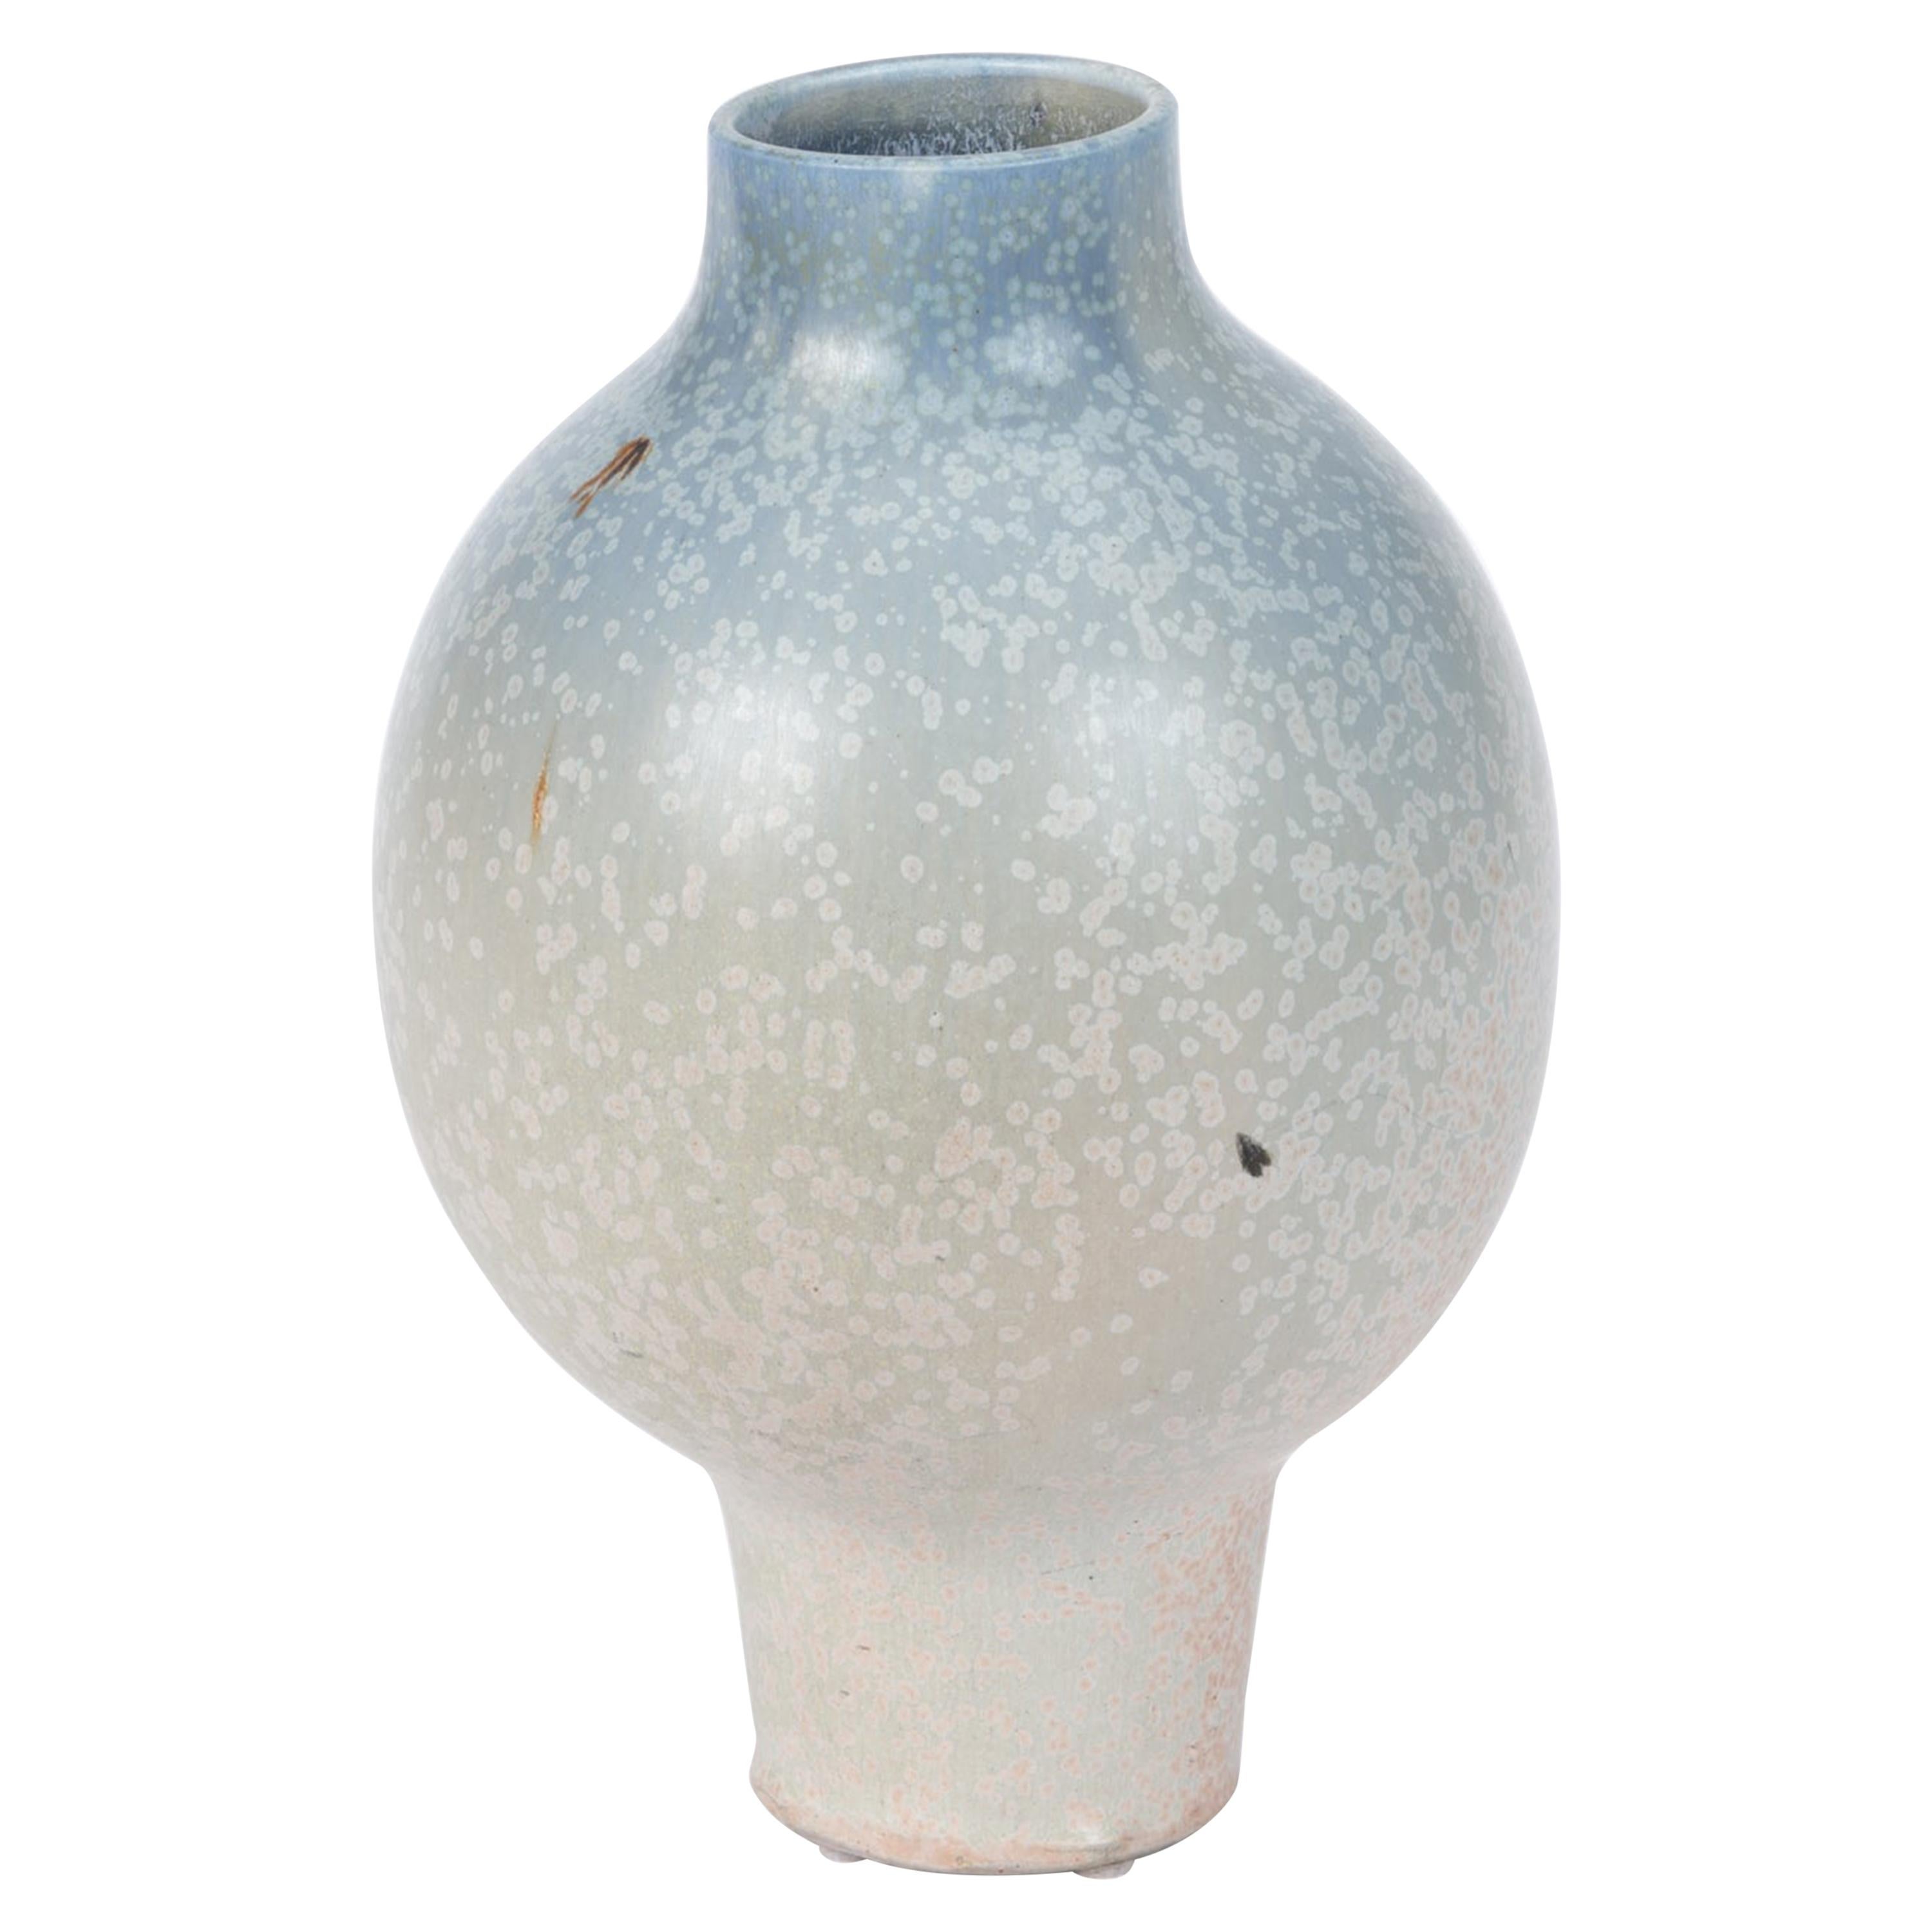 Studio Pottery Vase with Light Ombre Glaze